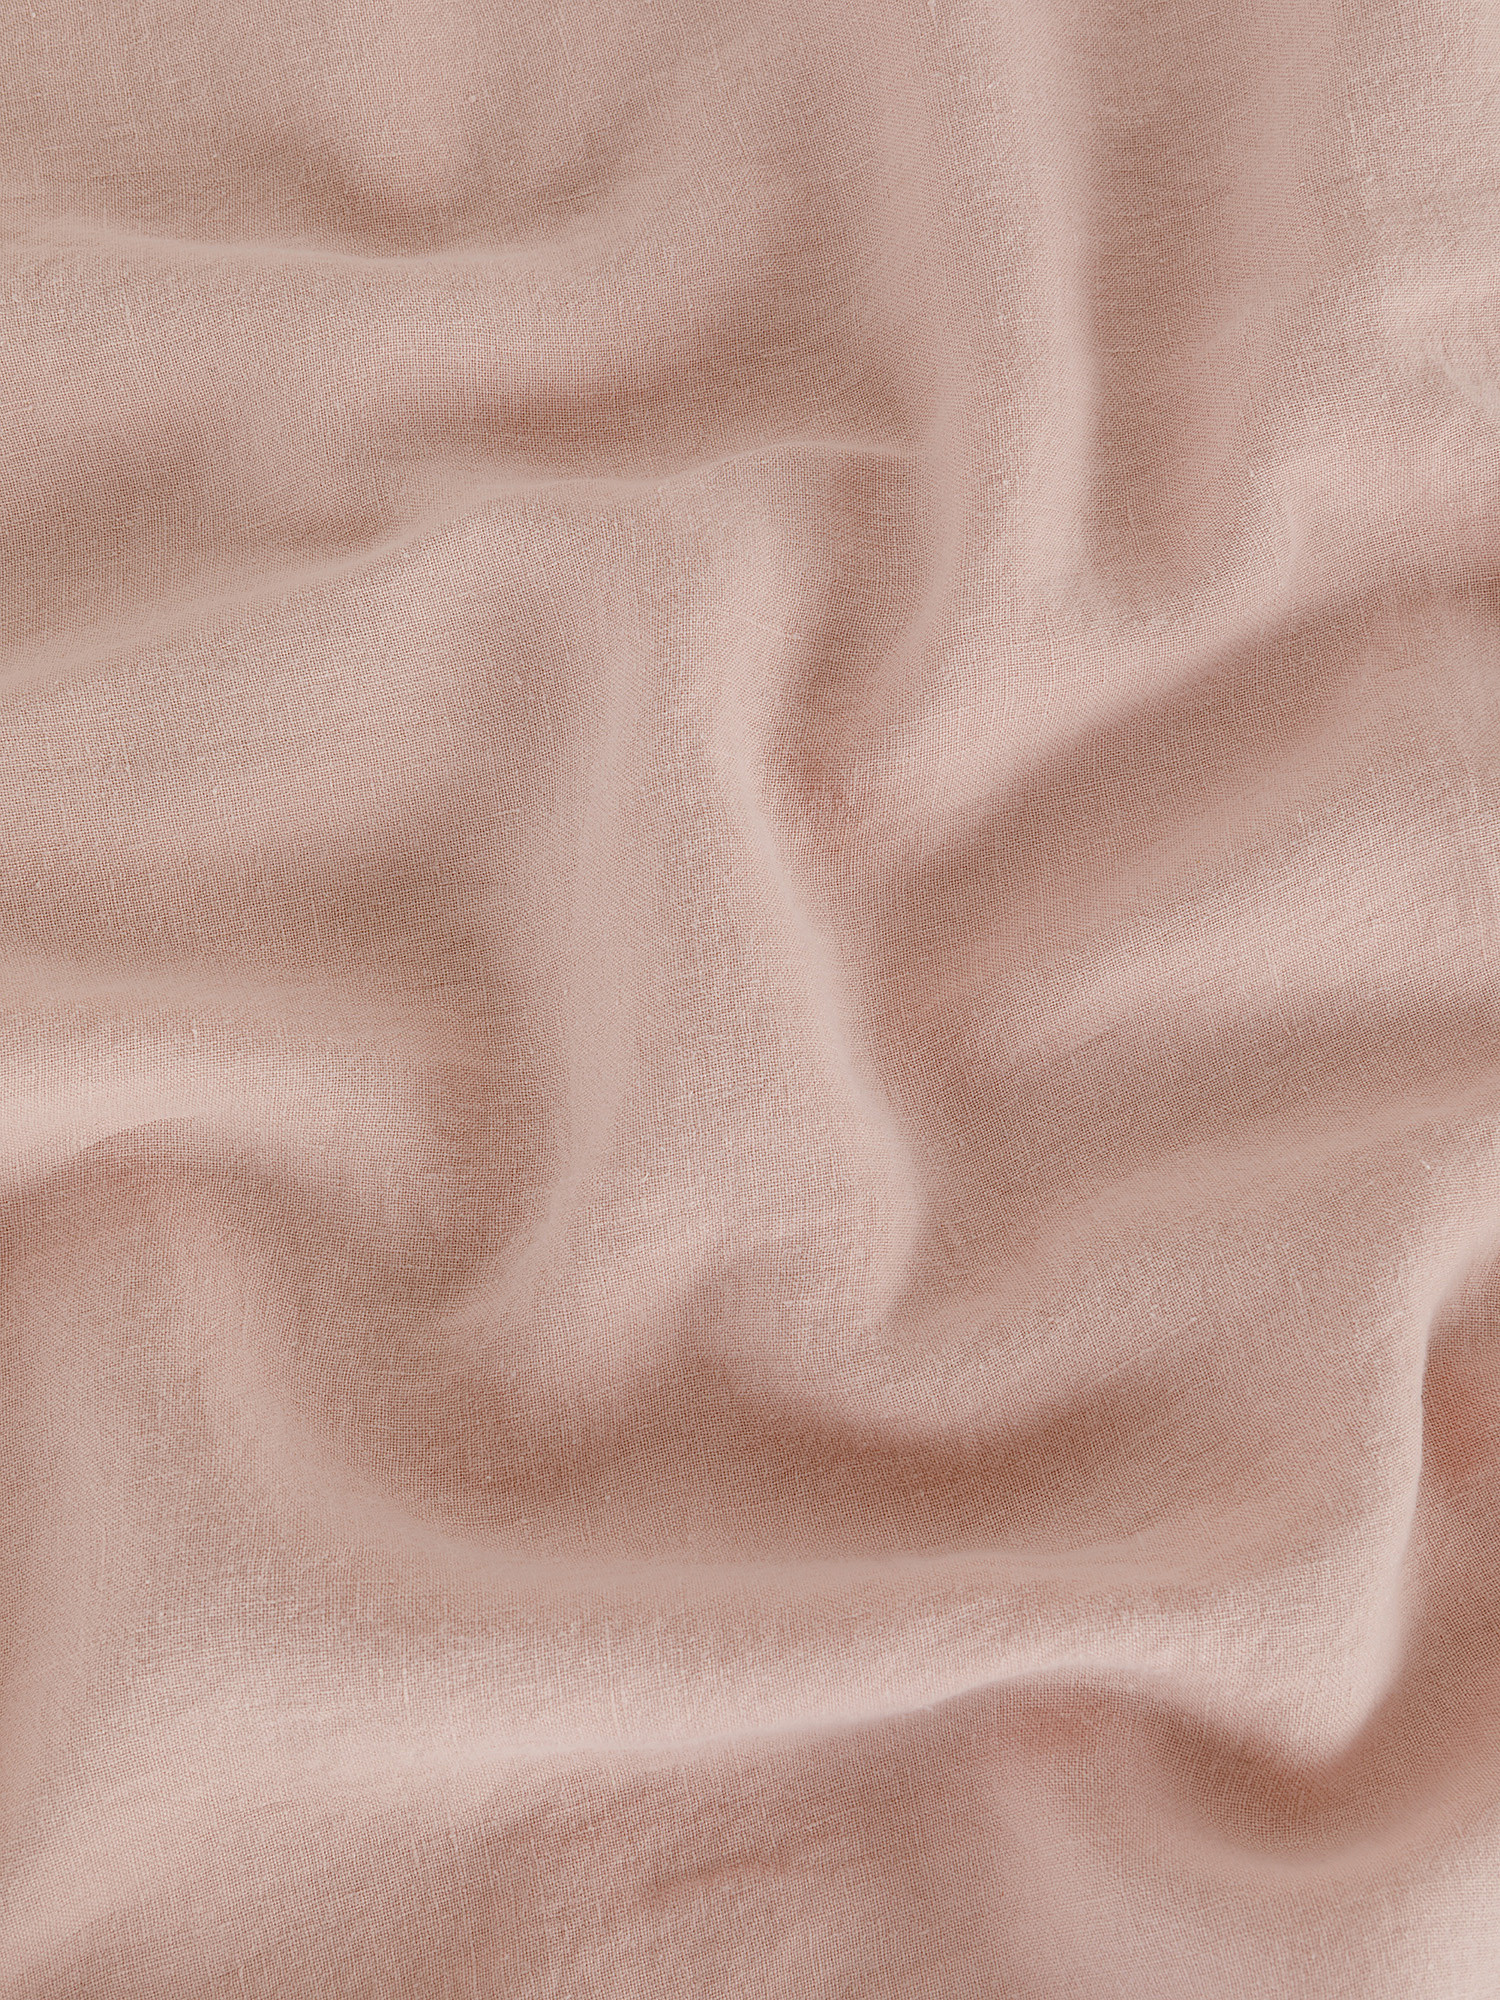 Zefiro plain pure linen sheet, Light Pink, large image number 2